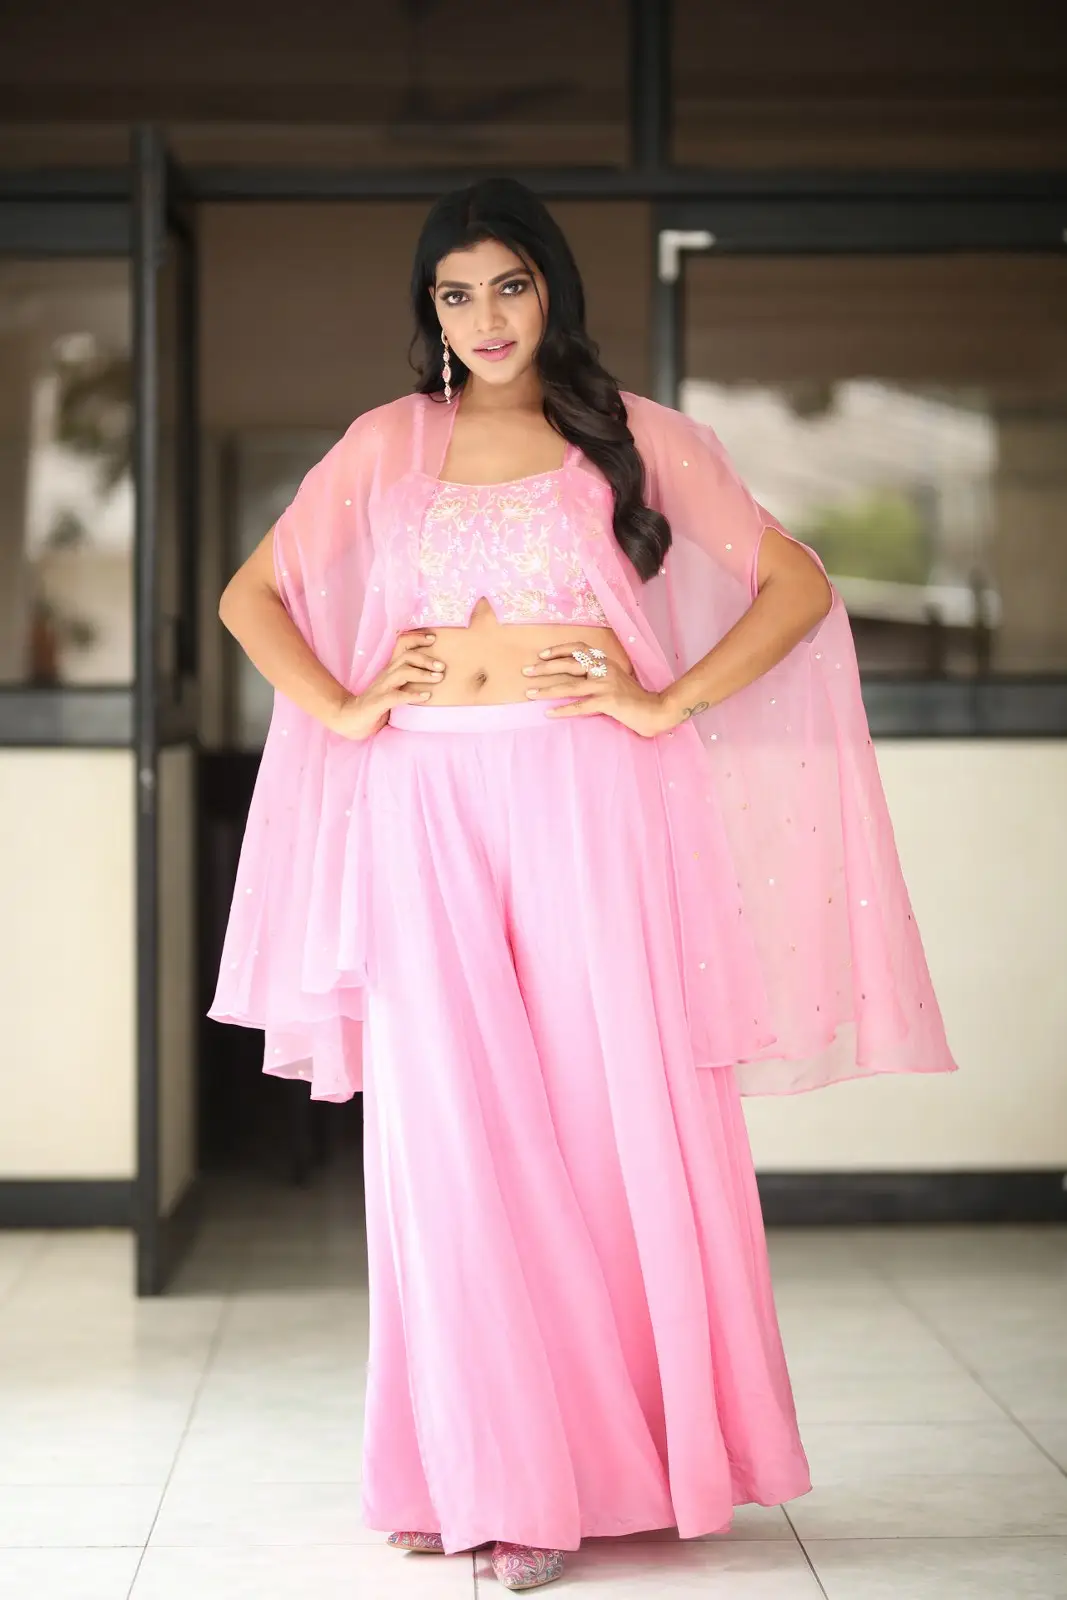 BiggBoss Fame Lahari Shari Stunning looks in Pink Dress 